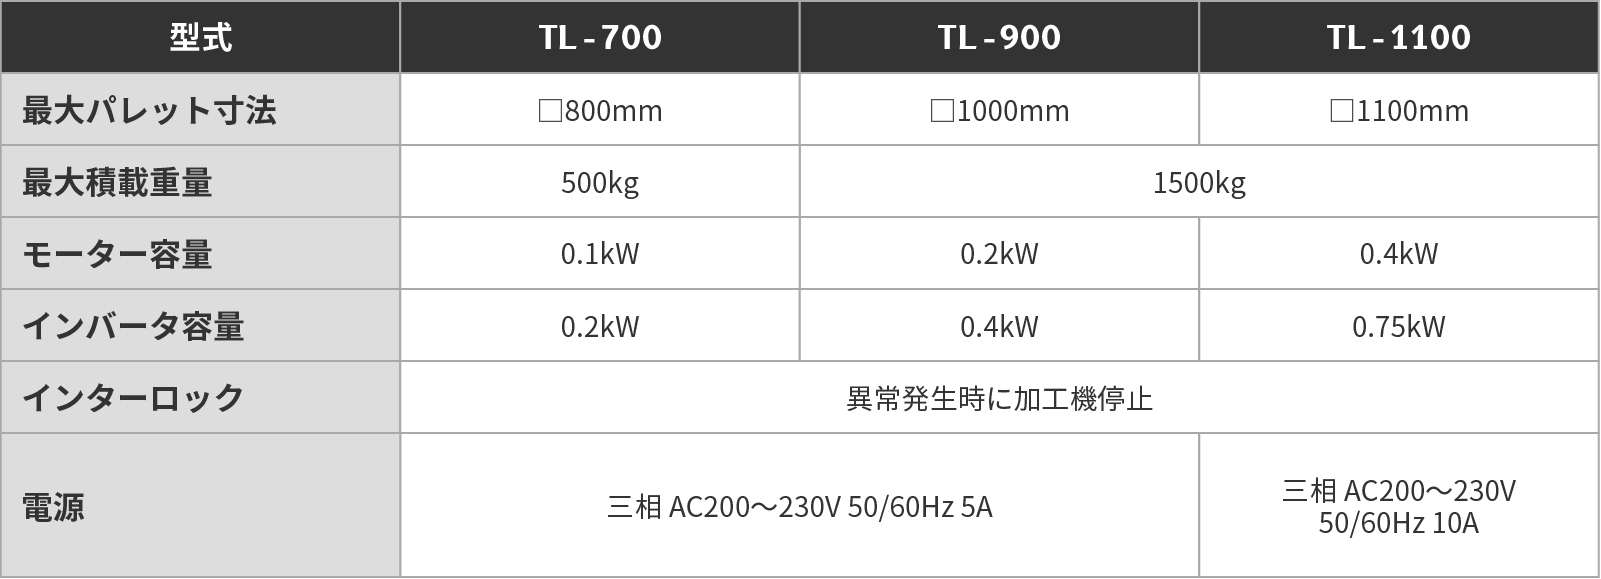 TL-700・900・1100